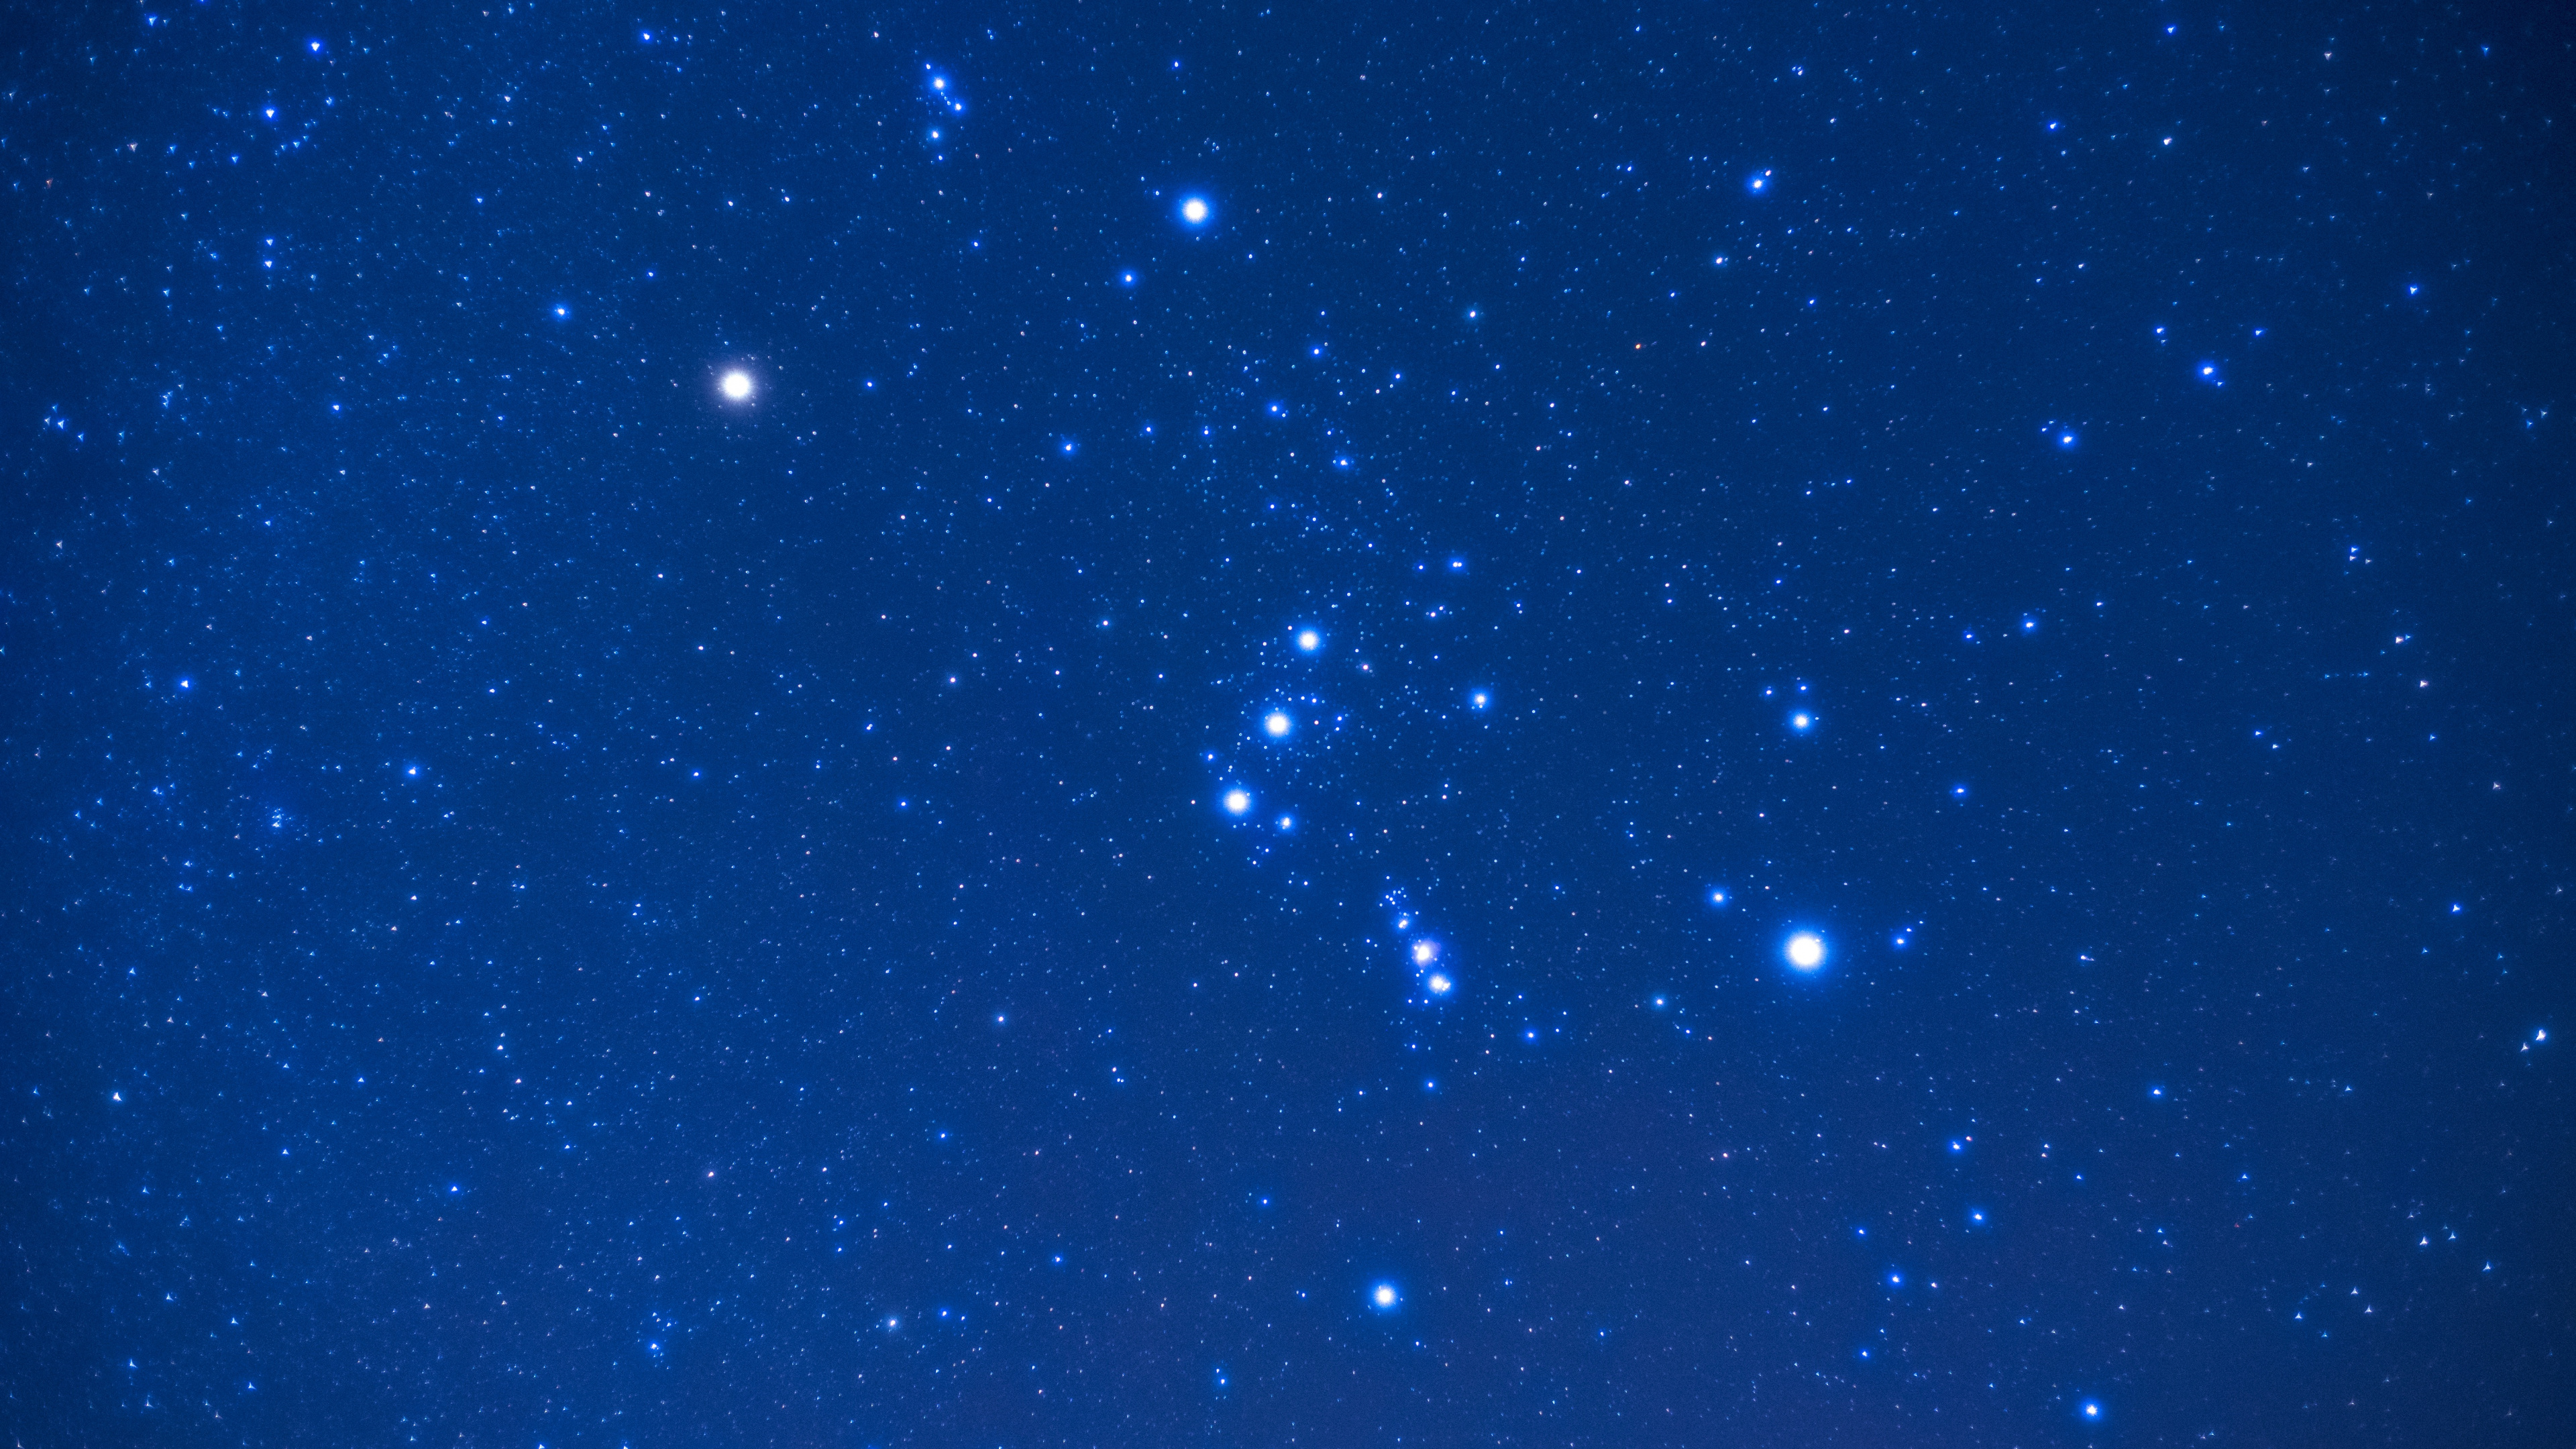 星座, 明星, 天文学, 夜晚的天空, 钴蓝色的 壁纸 3840x2160 允许